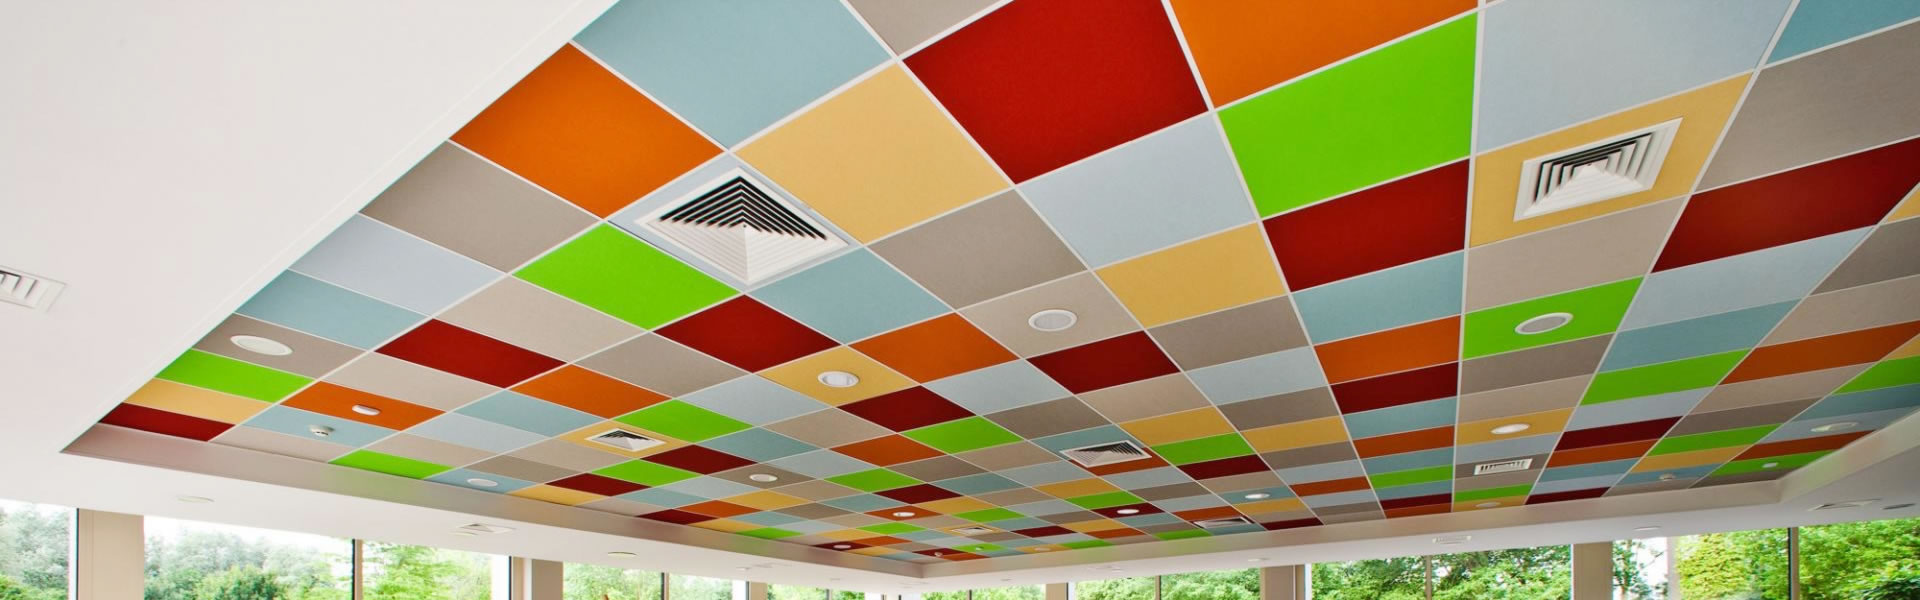 Rockfon Colour All Ceiling tile